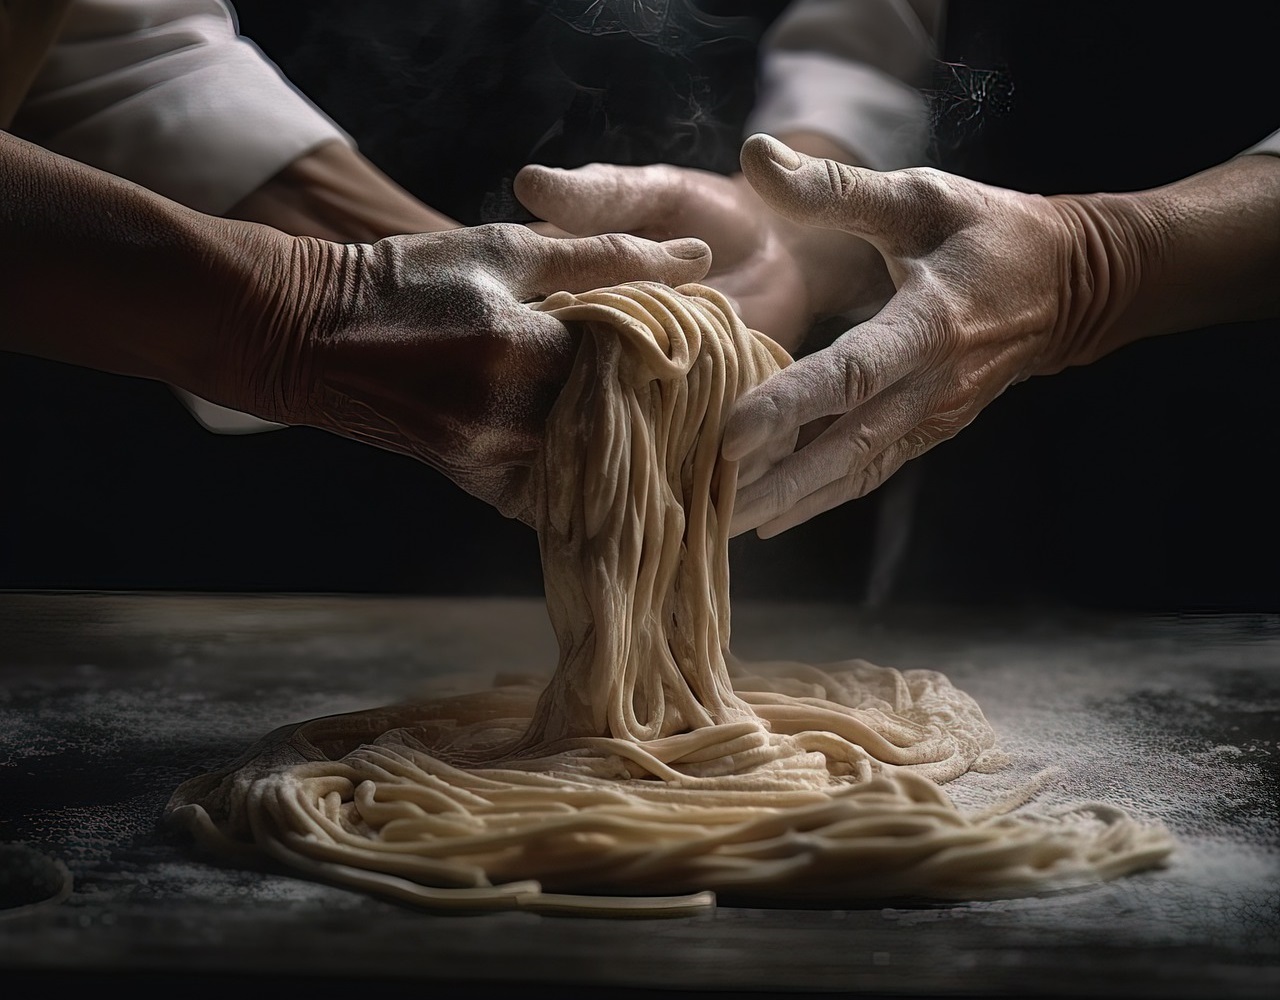 Italia primo produttore di pasta